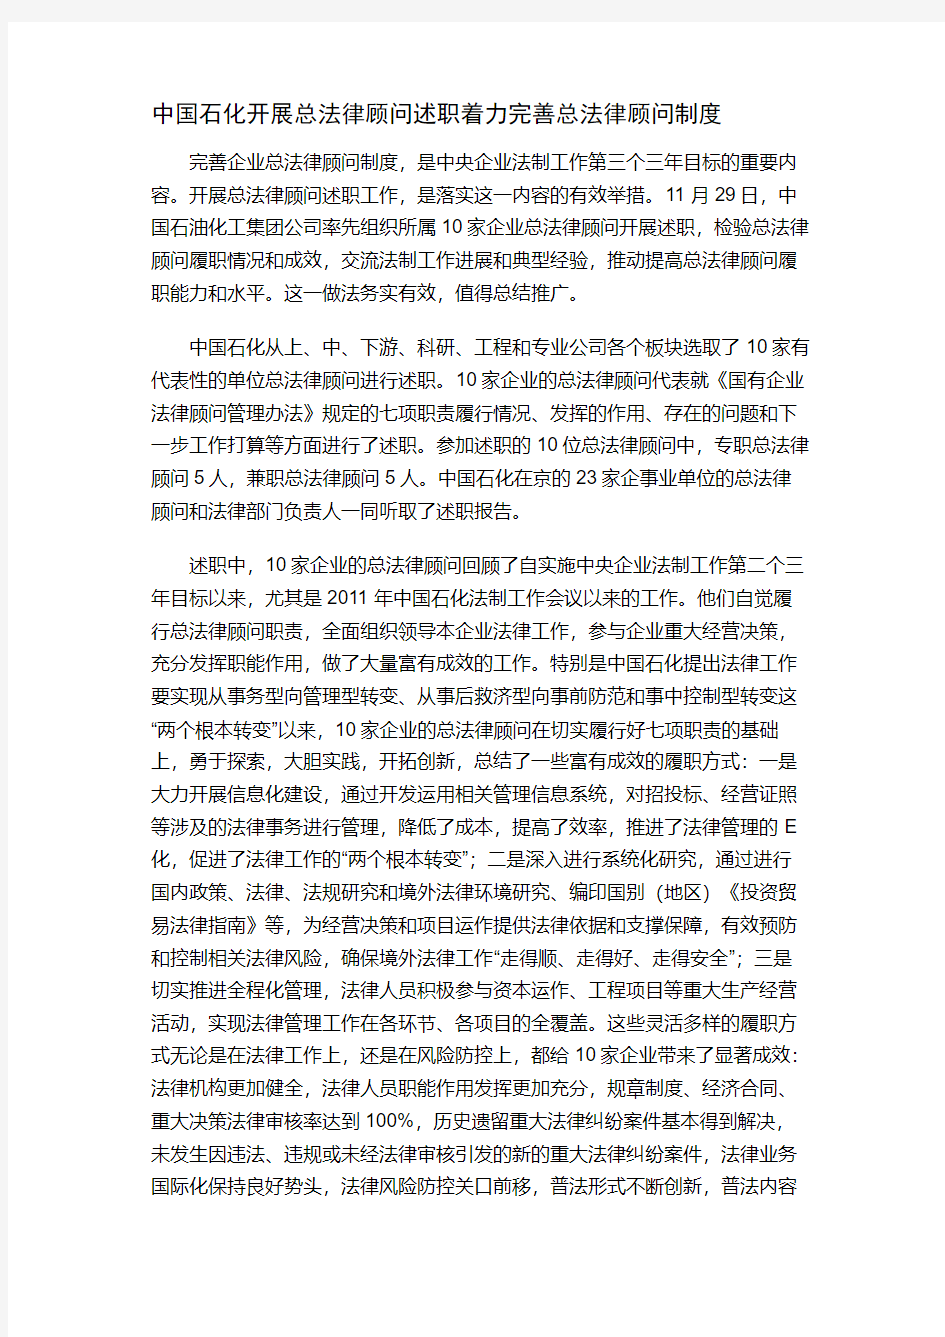 中国石化开展总法律顾问述职着力完善总法律顾问制度